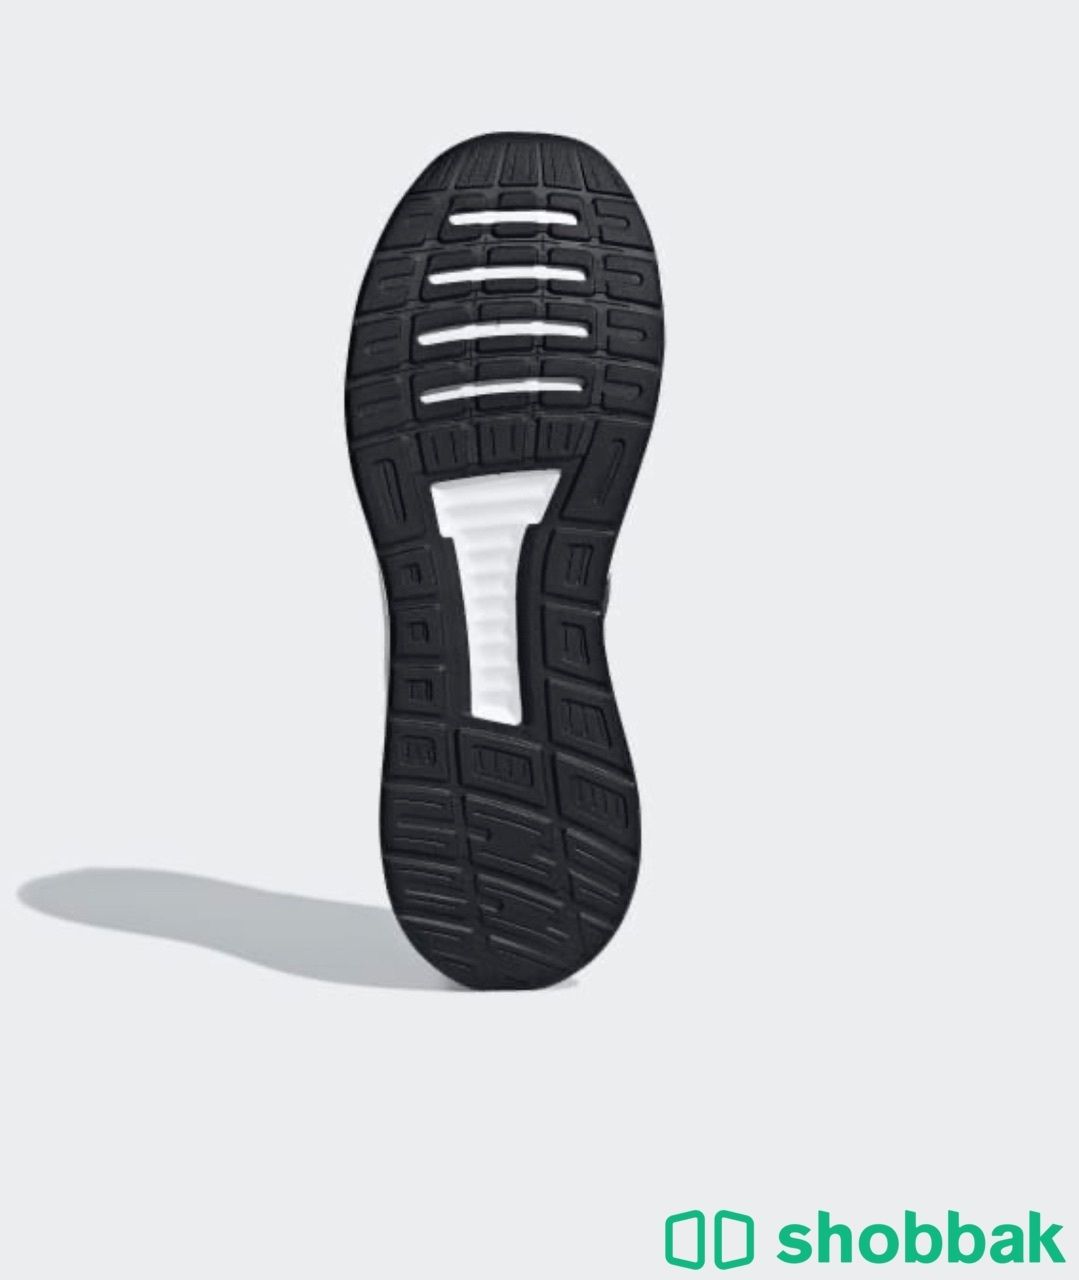 جزمة اديداس أصلية وجديدة || adidas  Shobbak Saudi Arabia